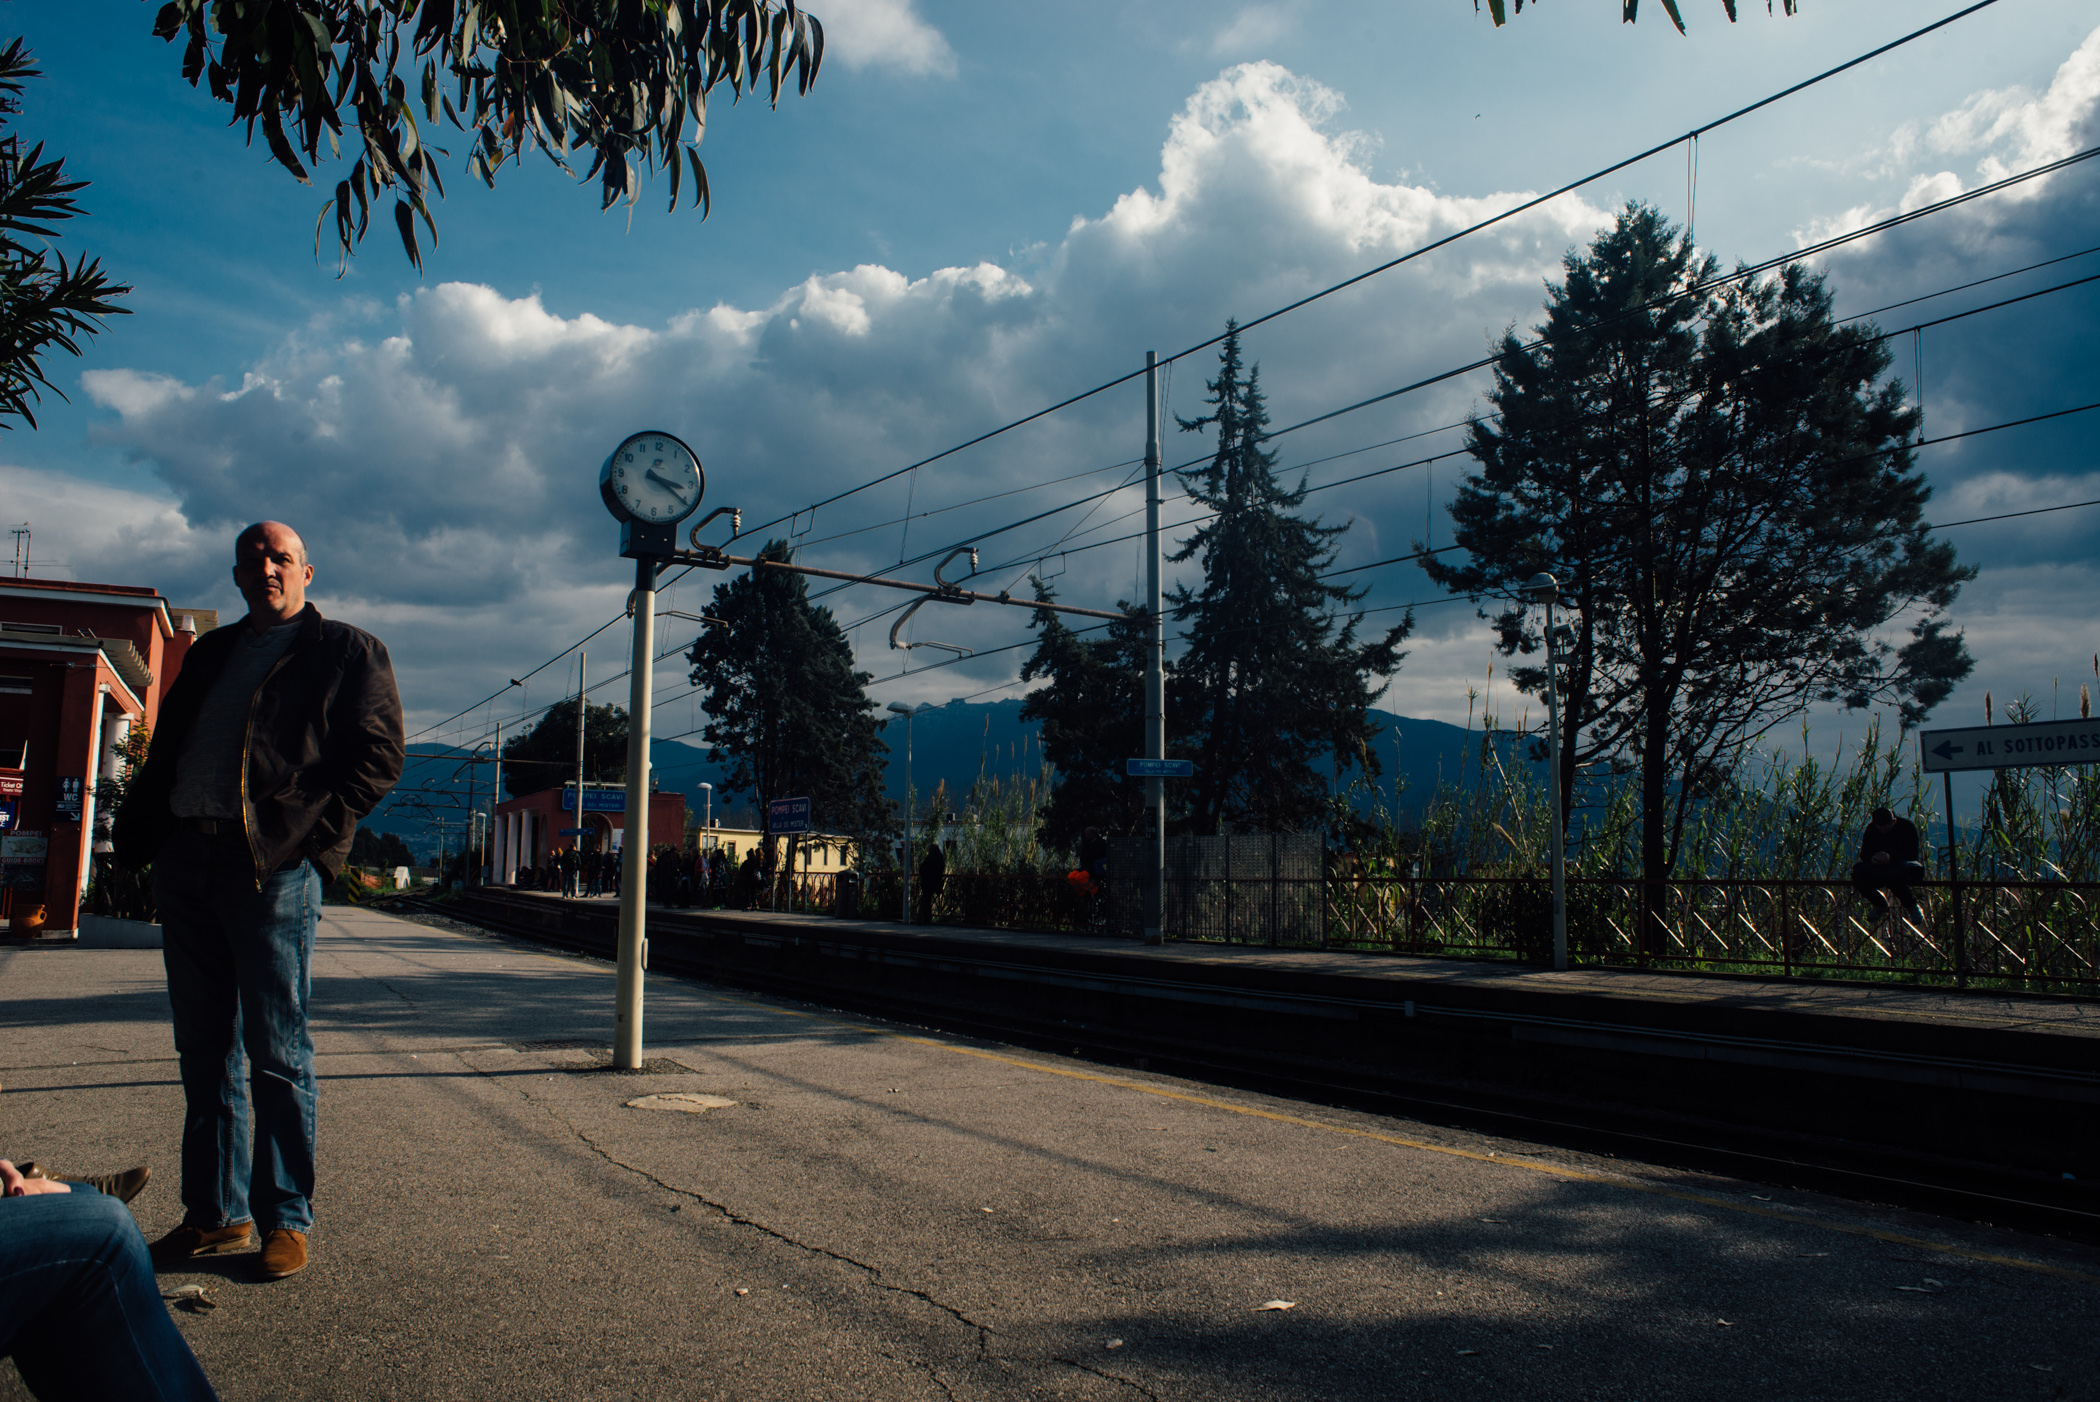 Train station near Pompei.